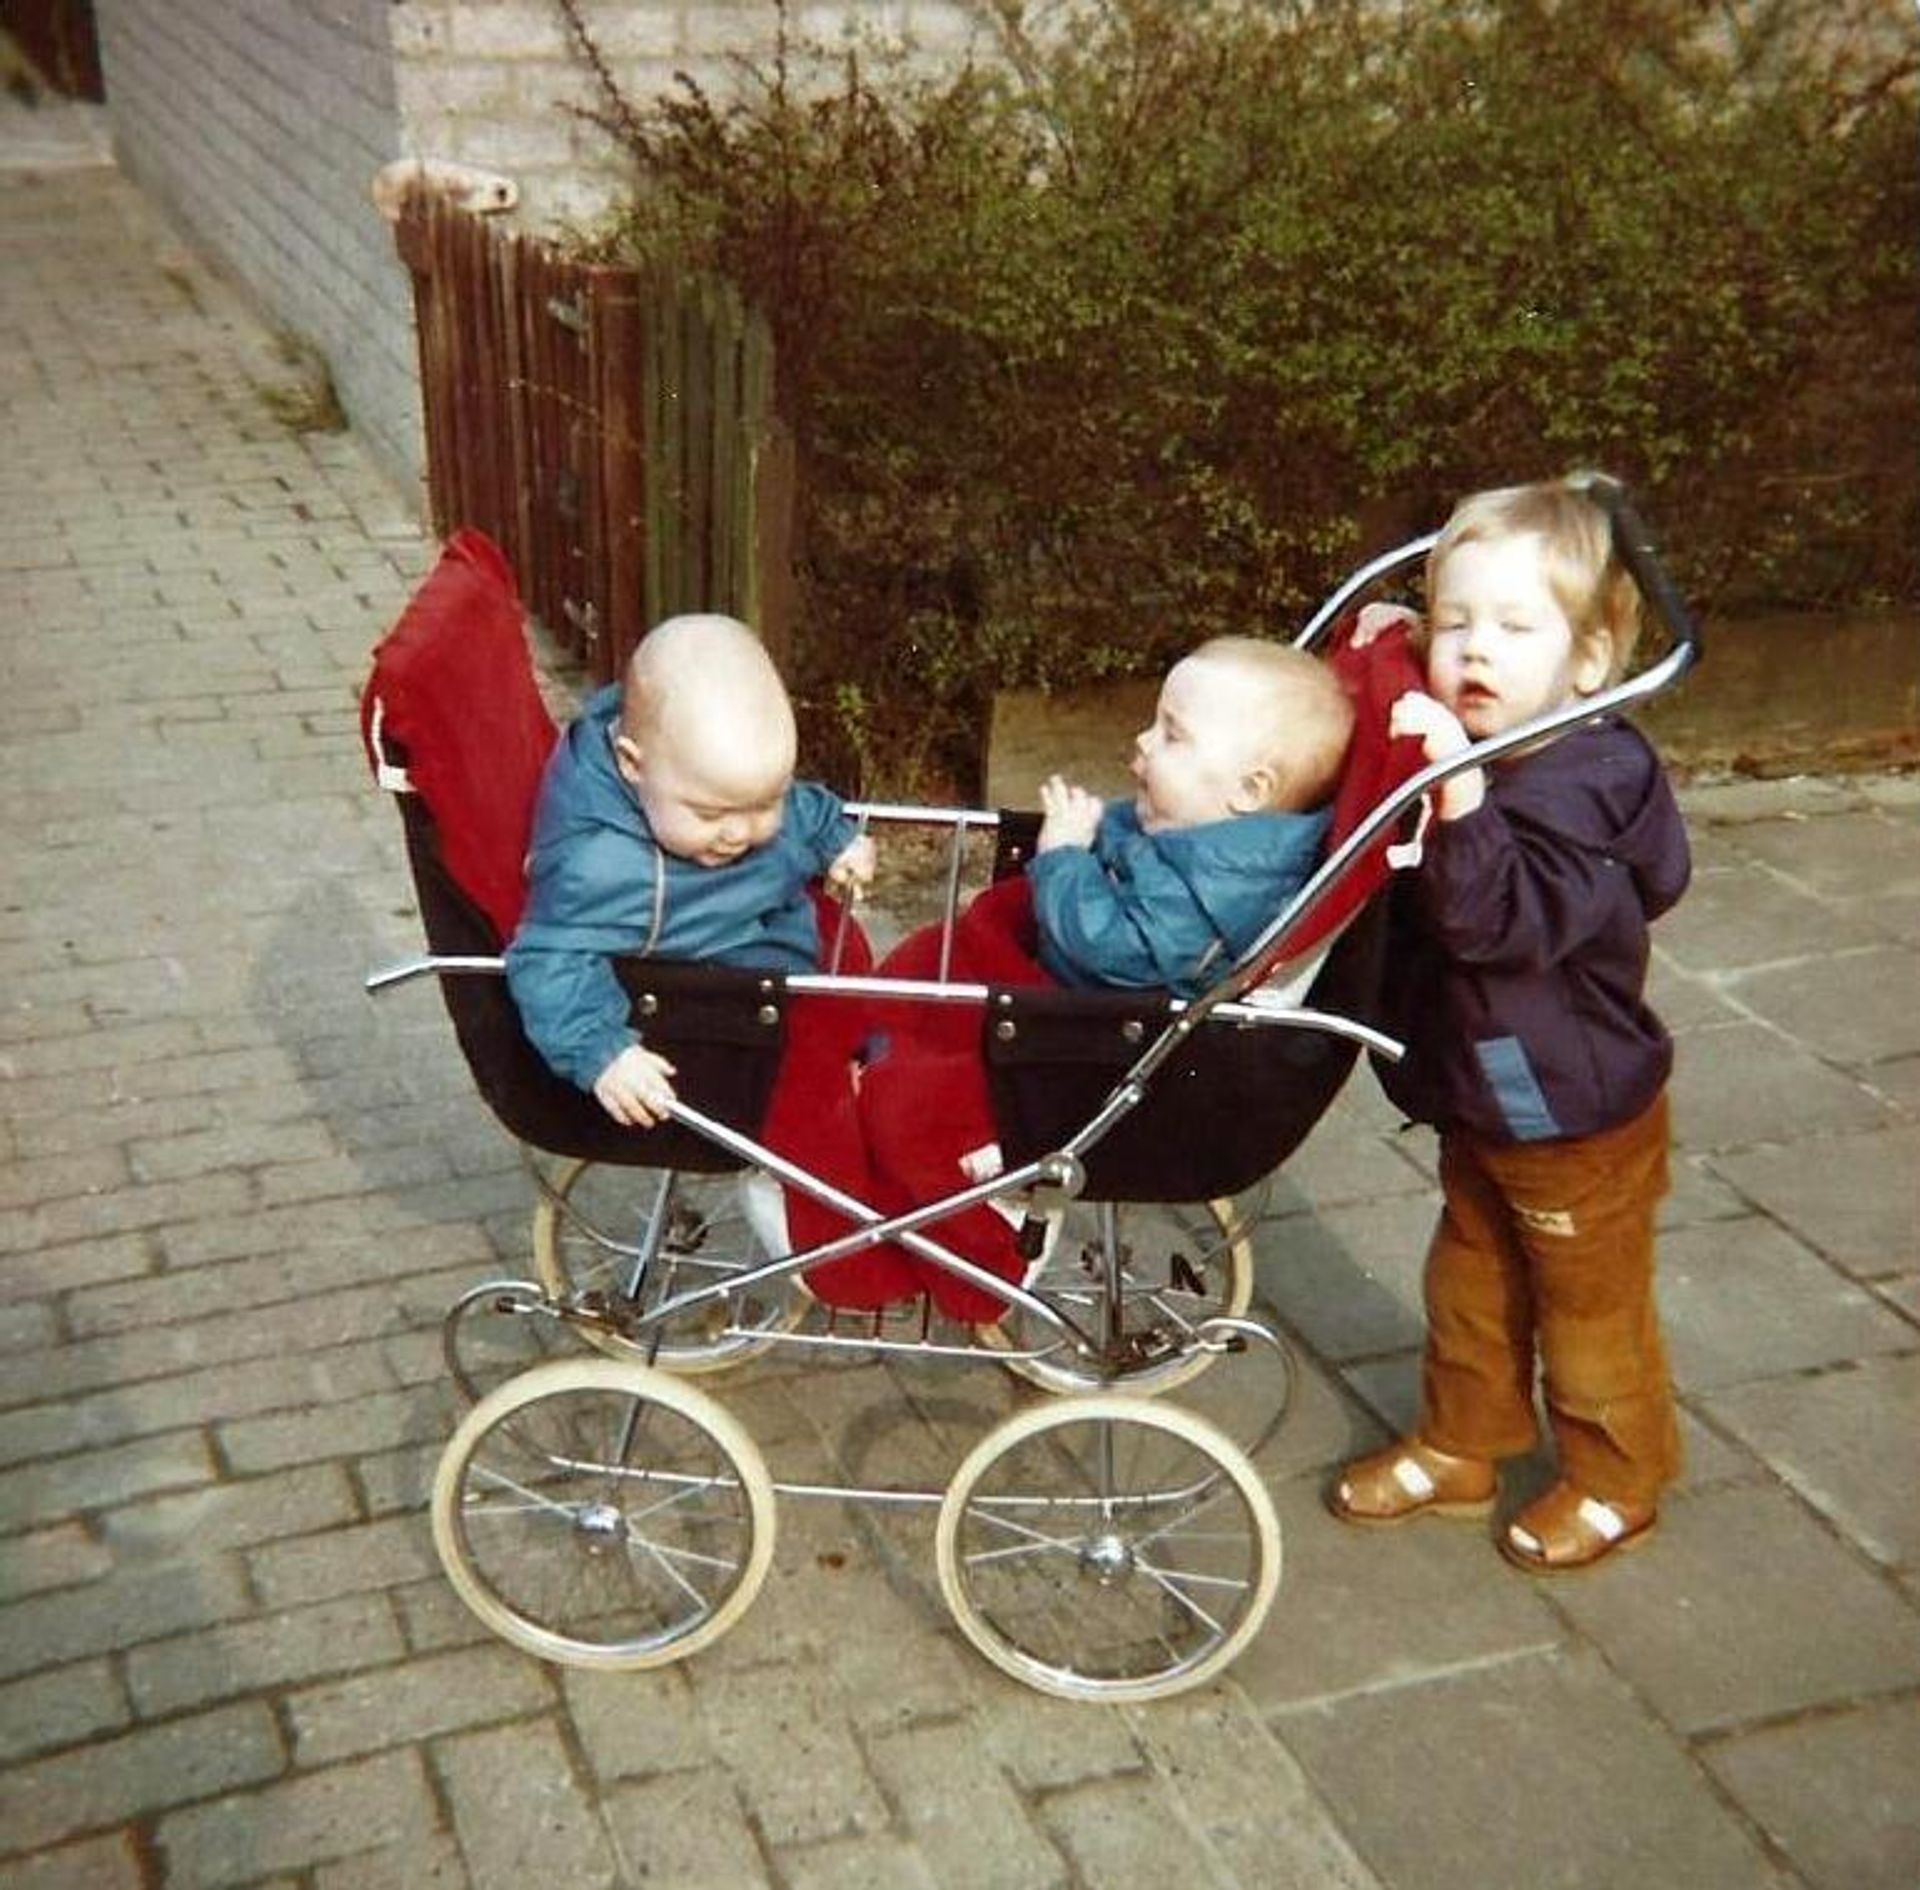 Pim bij de kinderwagen waar zijn zusjes Annemiek en Frederiek in zitten